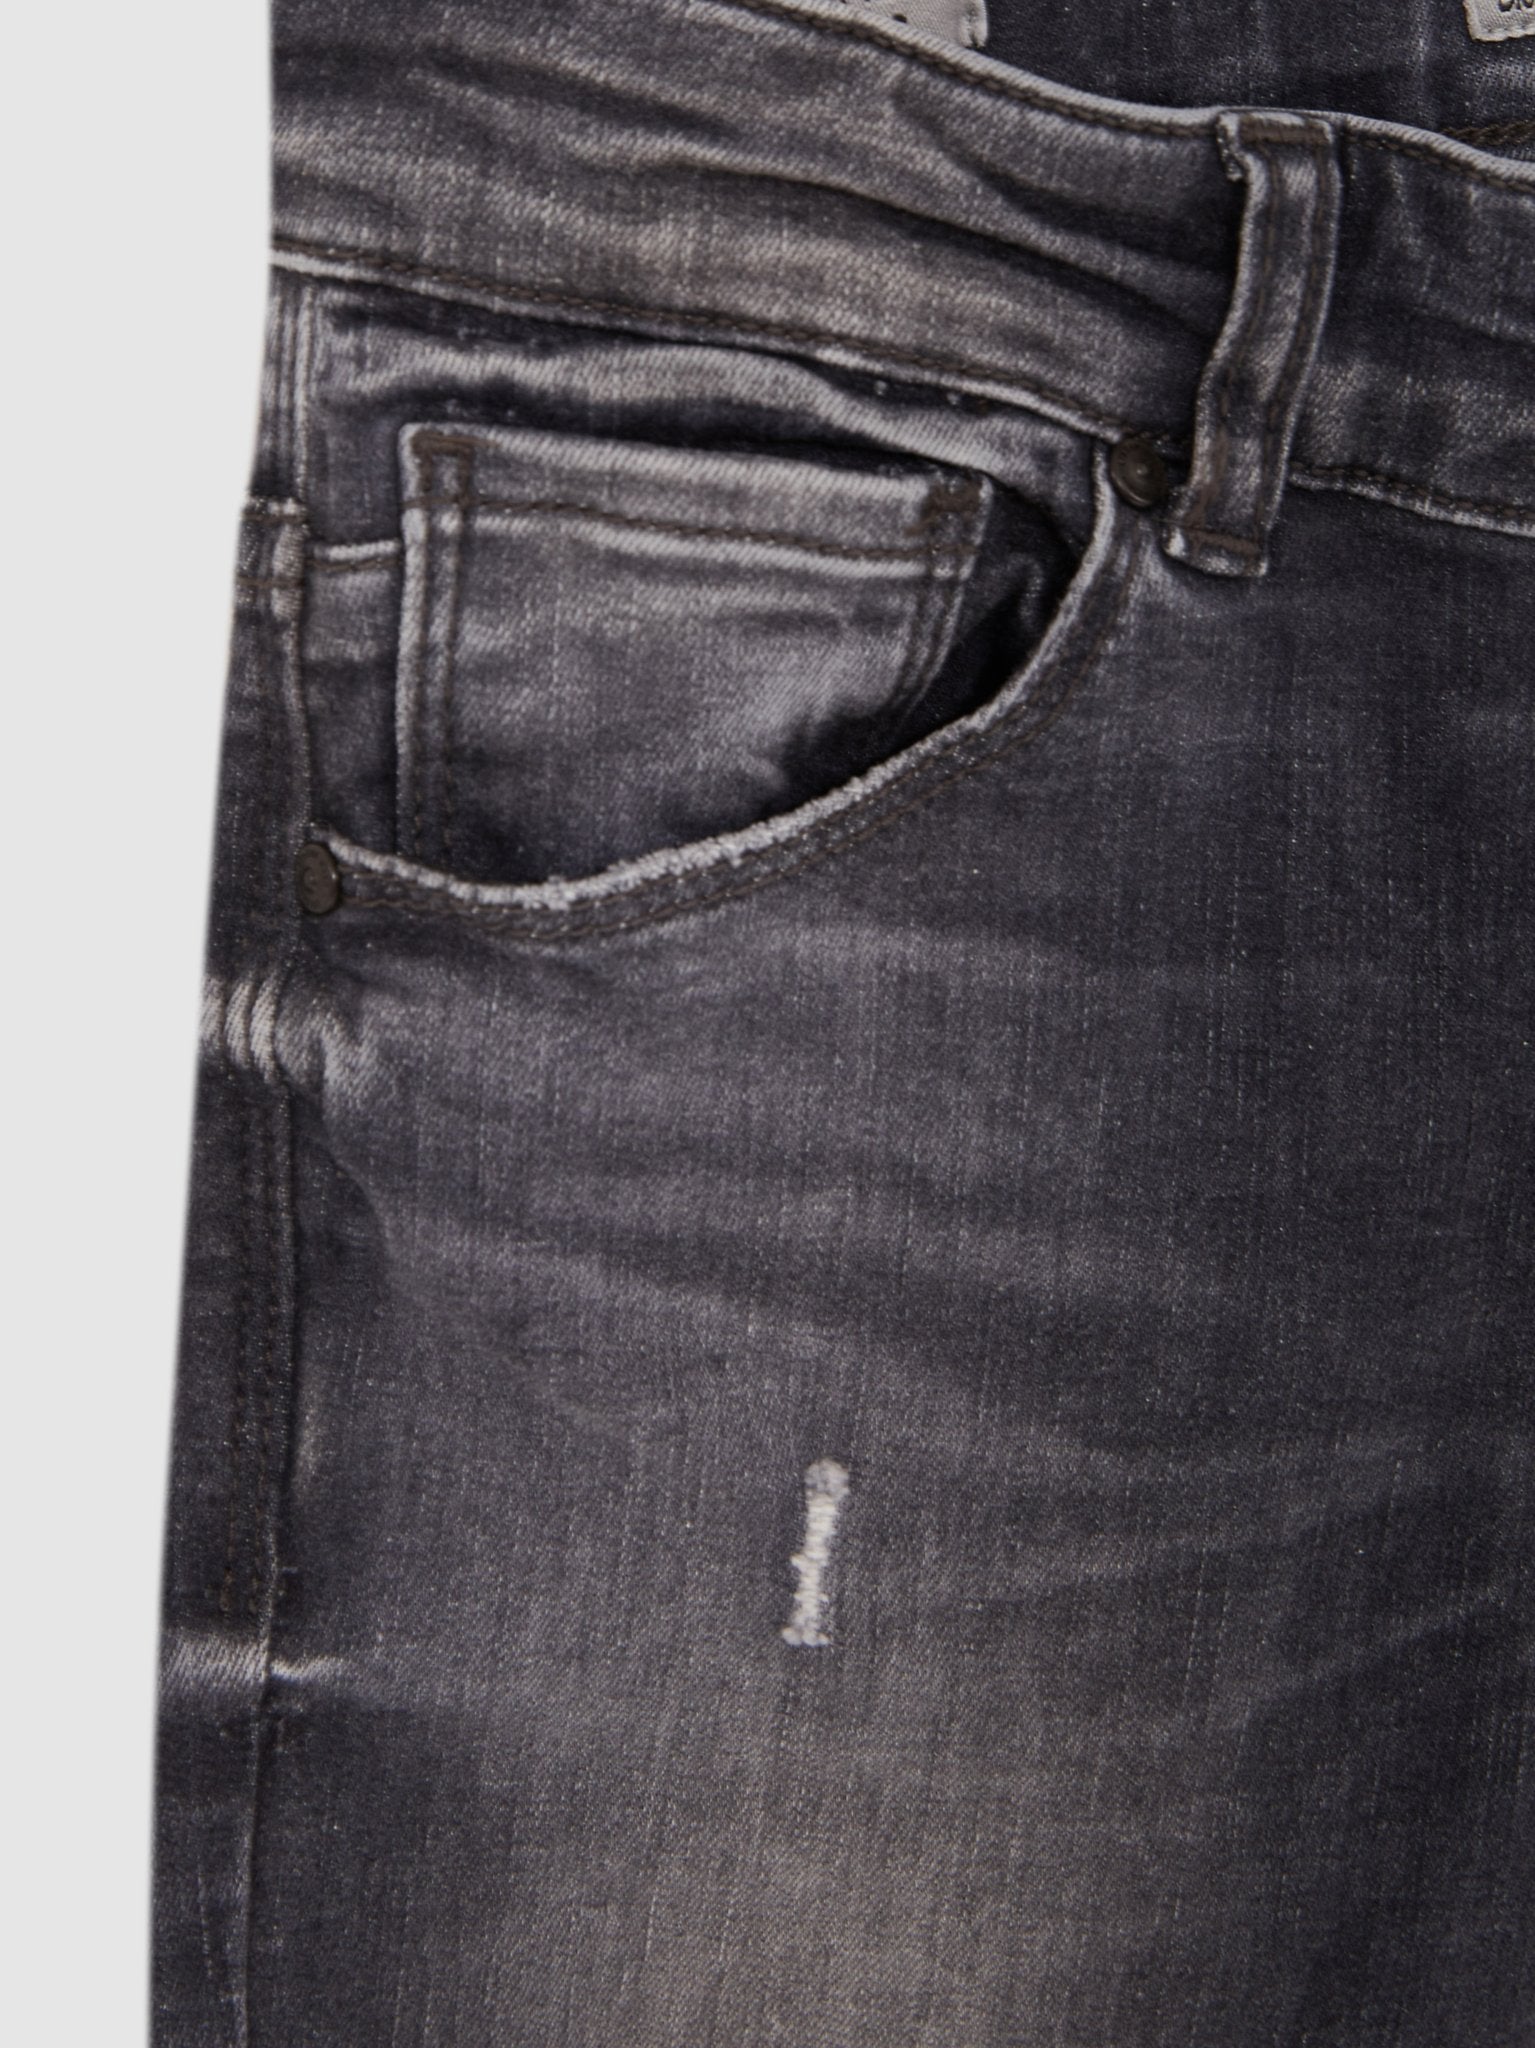 Jongens Jeans RAFIEL BCALI WASH van LTB in de kleur CALI WASH in maat 176.